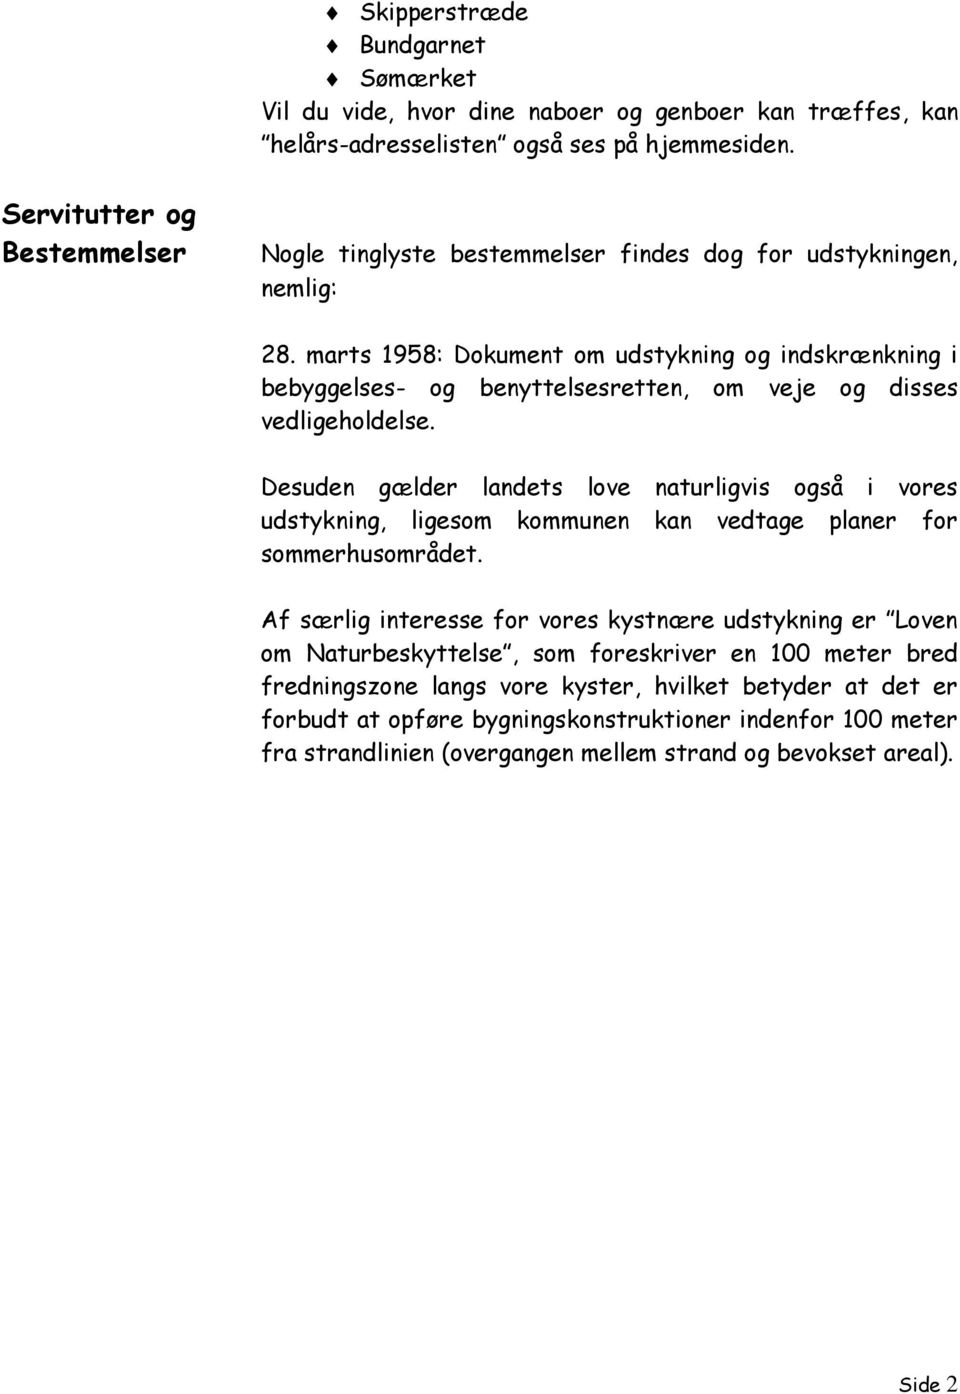 marts 1958: Dokument om udstykning og indskrænkning i bebyggelses- og benyttelsesretten, om veje og disses vedligeholdelse.